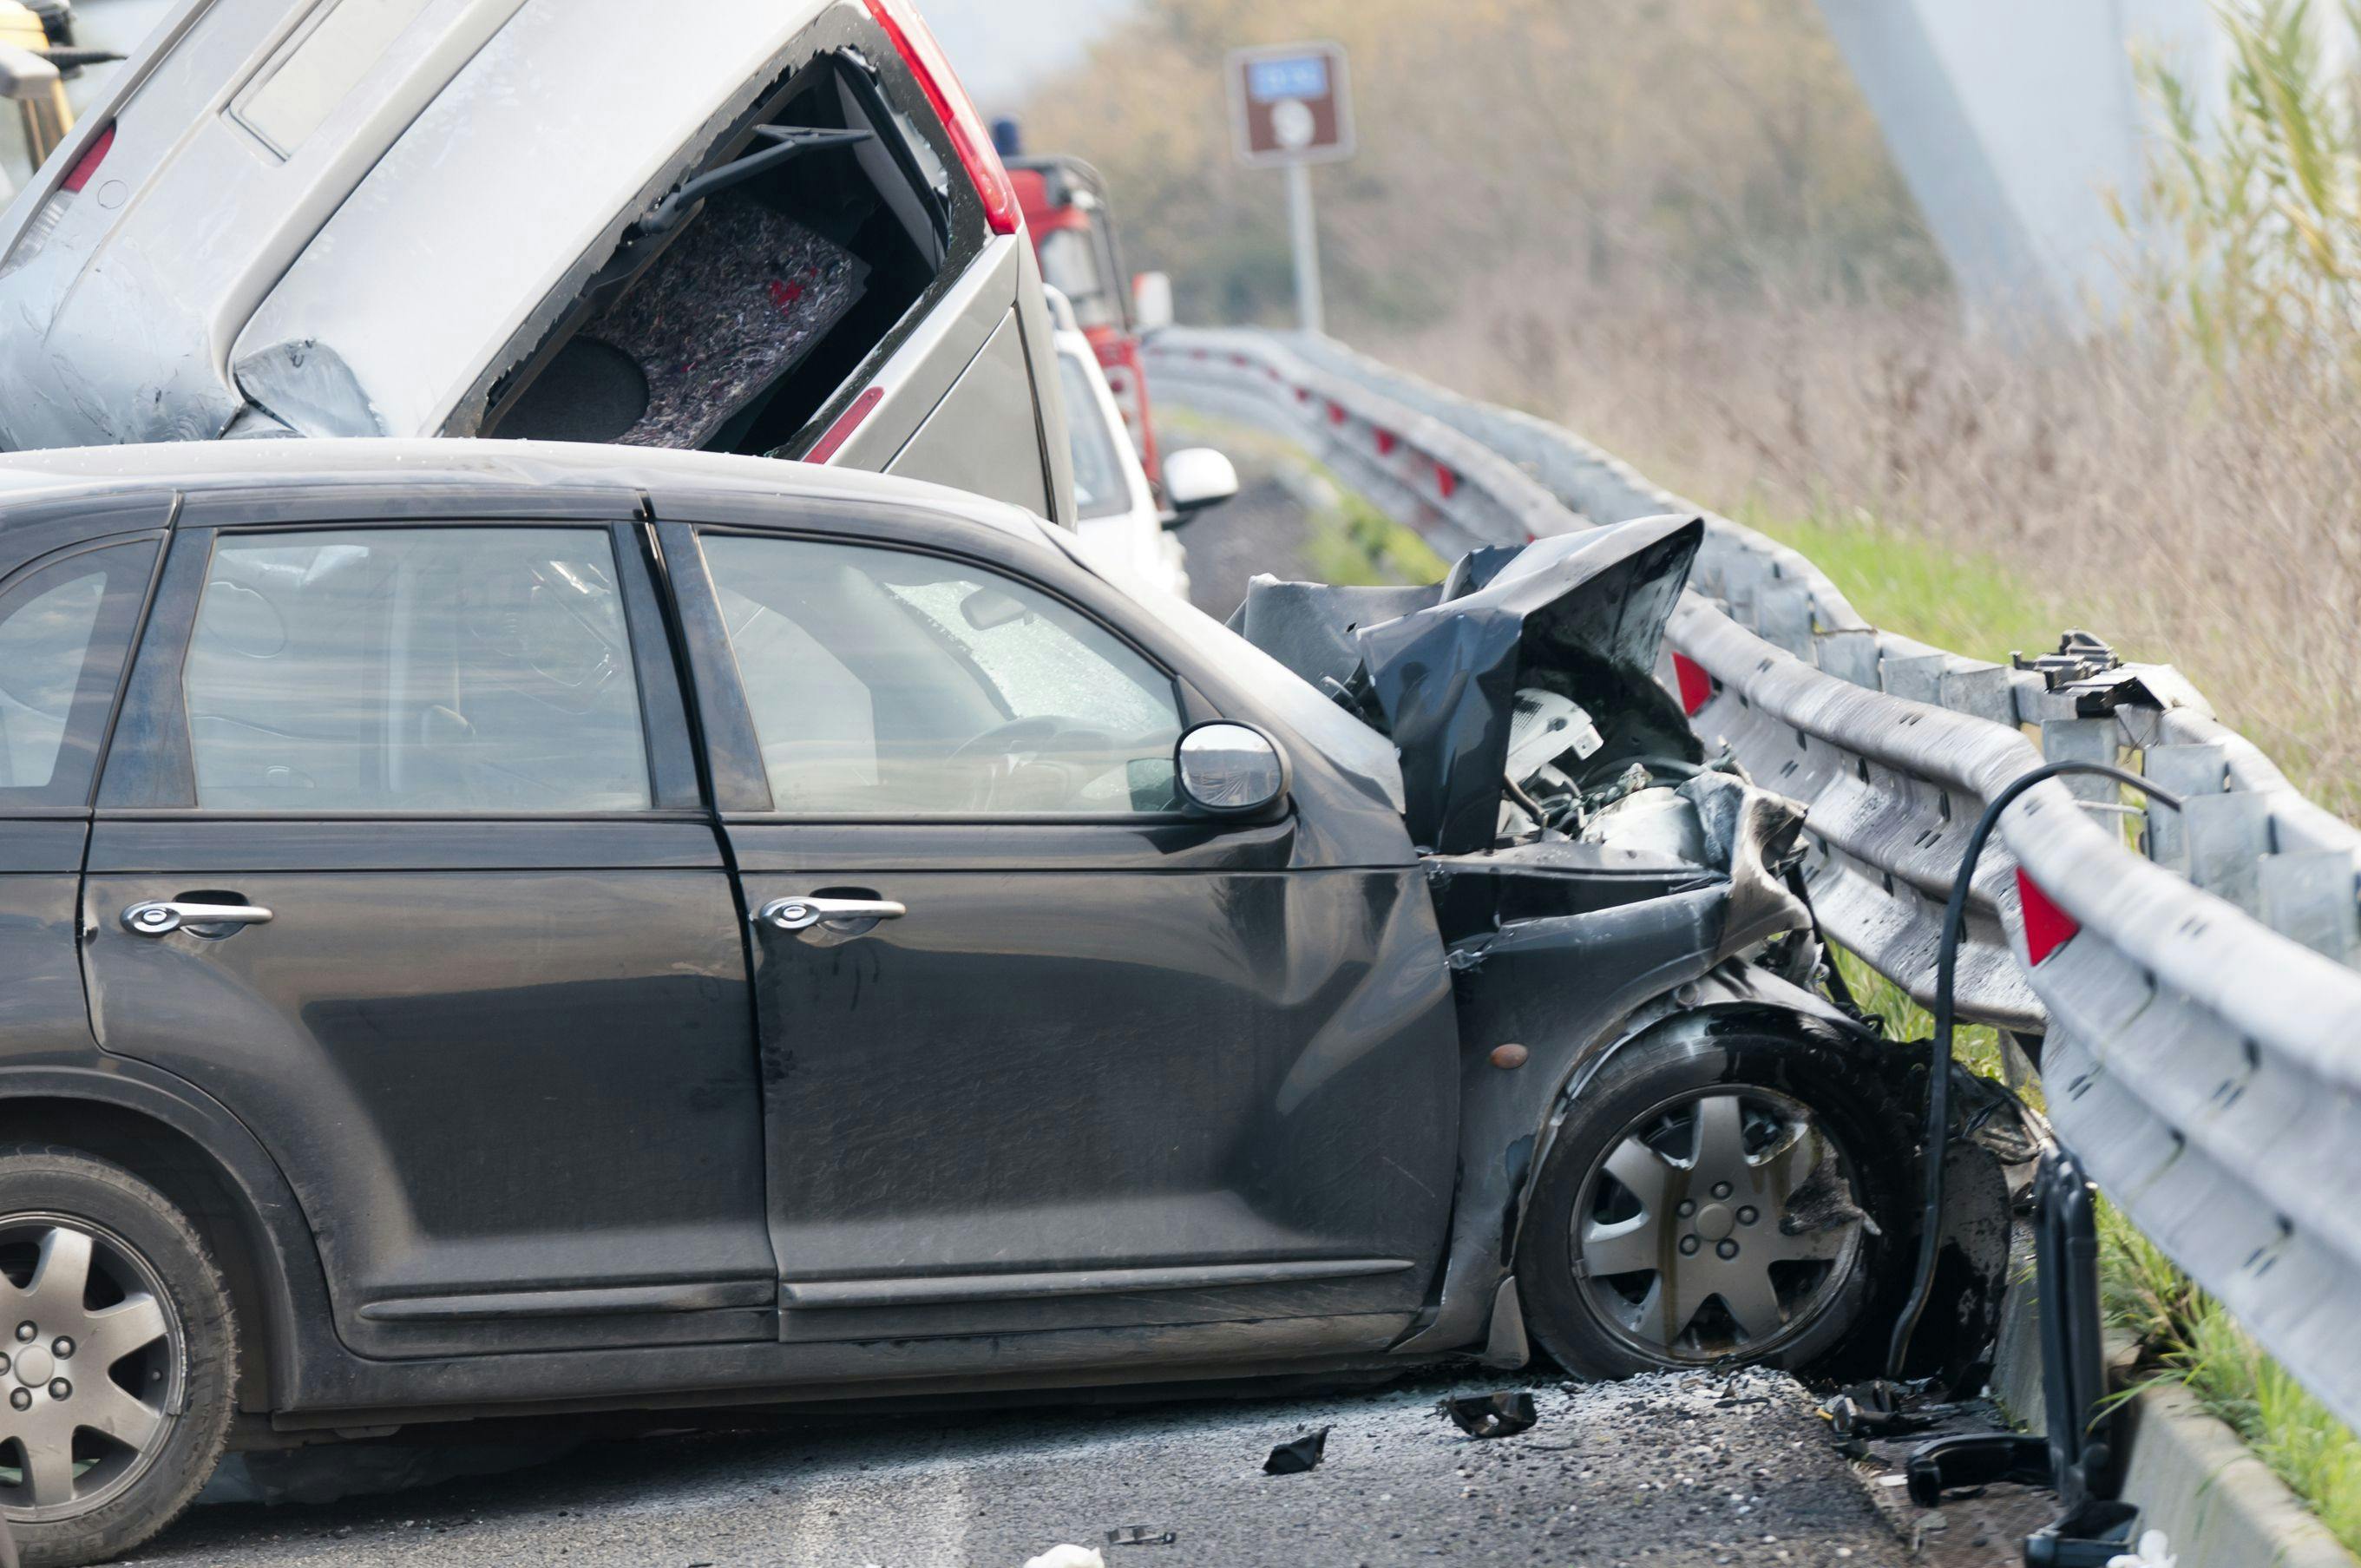 Abogados de Choques de Carros: ¿Qué Hacer Después de un Accidente?